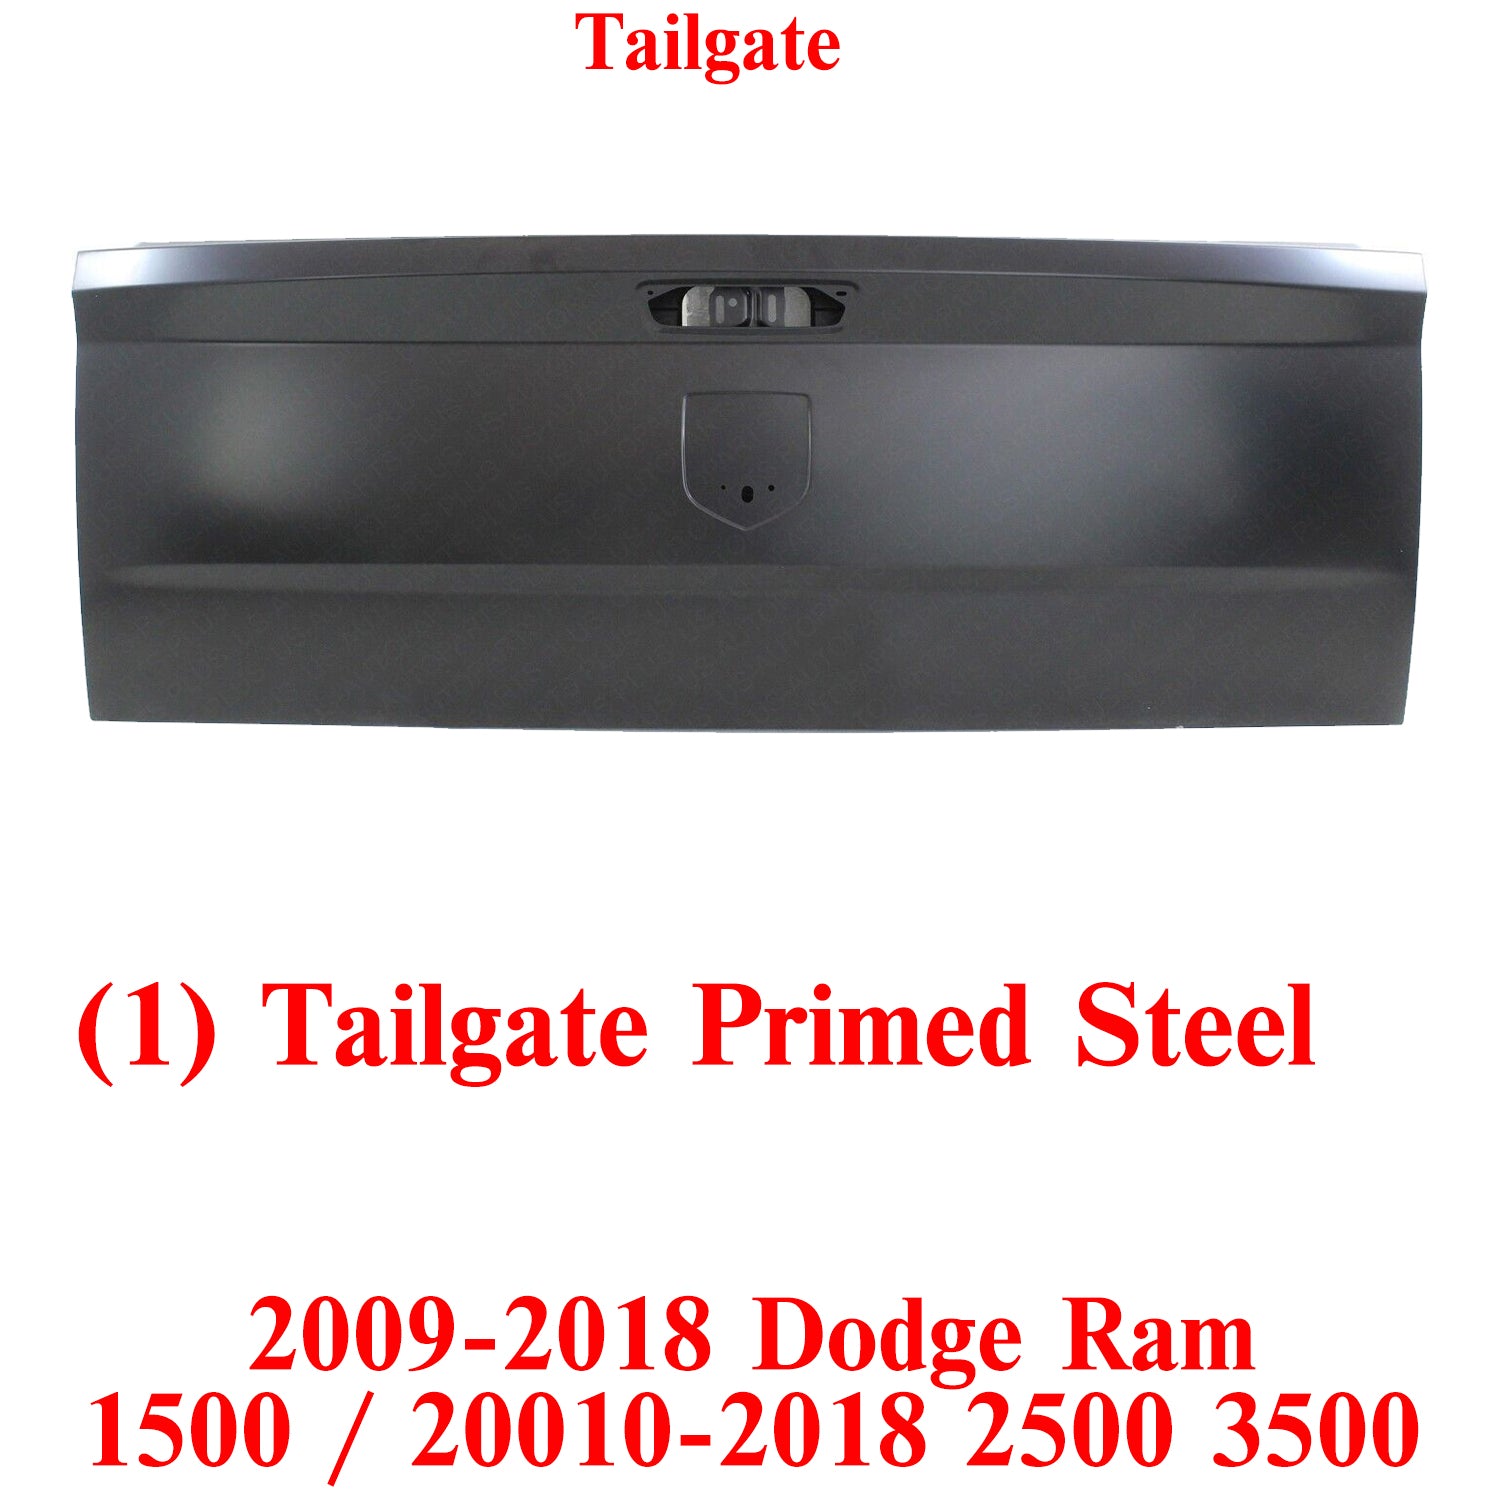 Tailgate Primed Steel For 2009-2018 Dodge Ram 1500 / 2010-2018 Ram 2500 3500